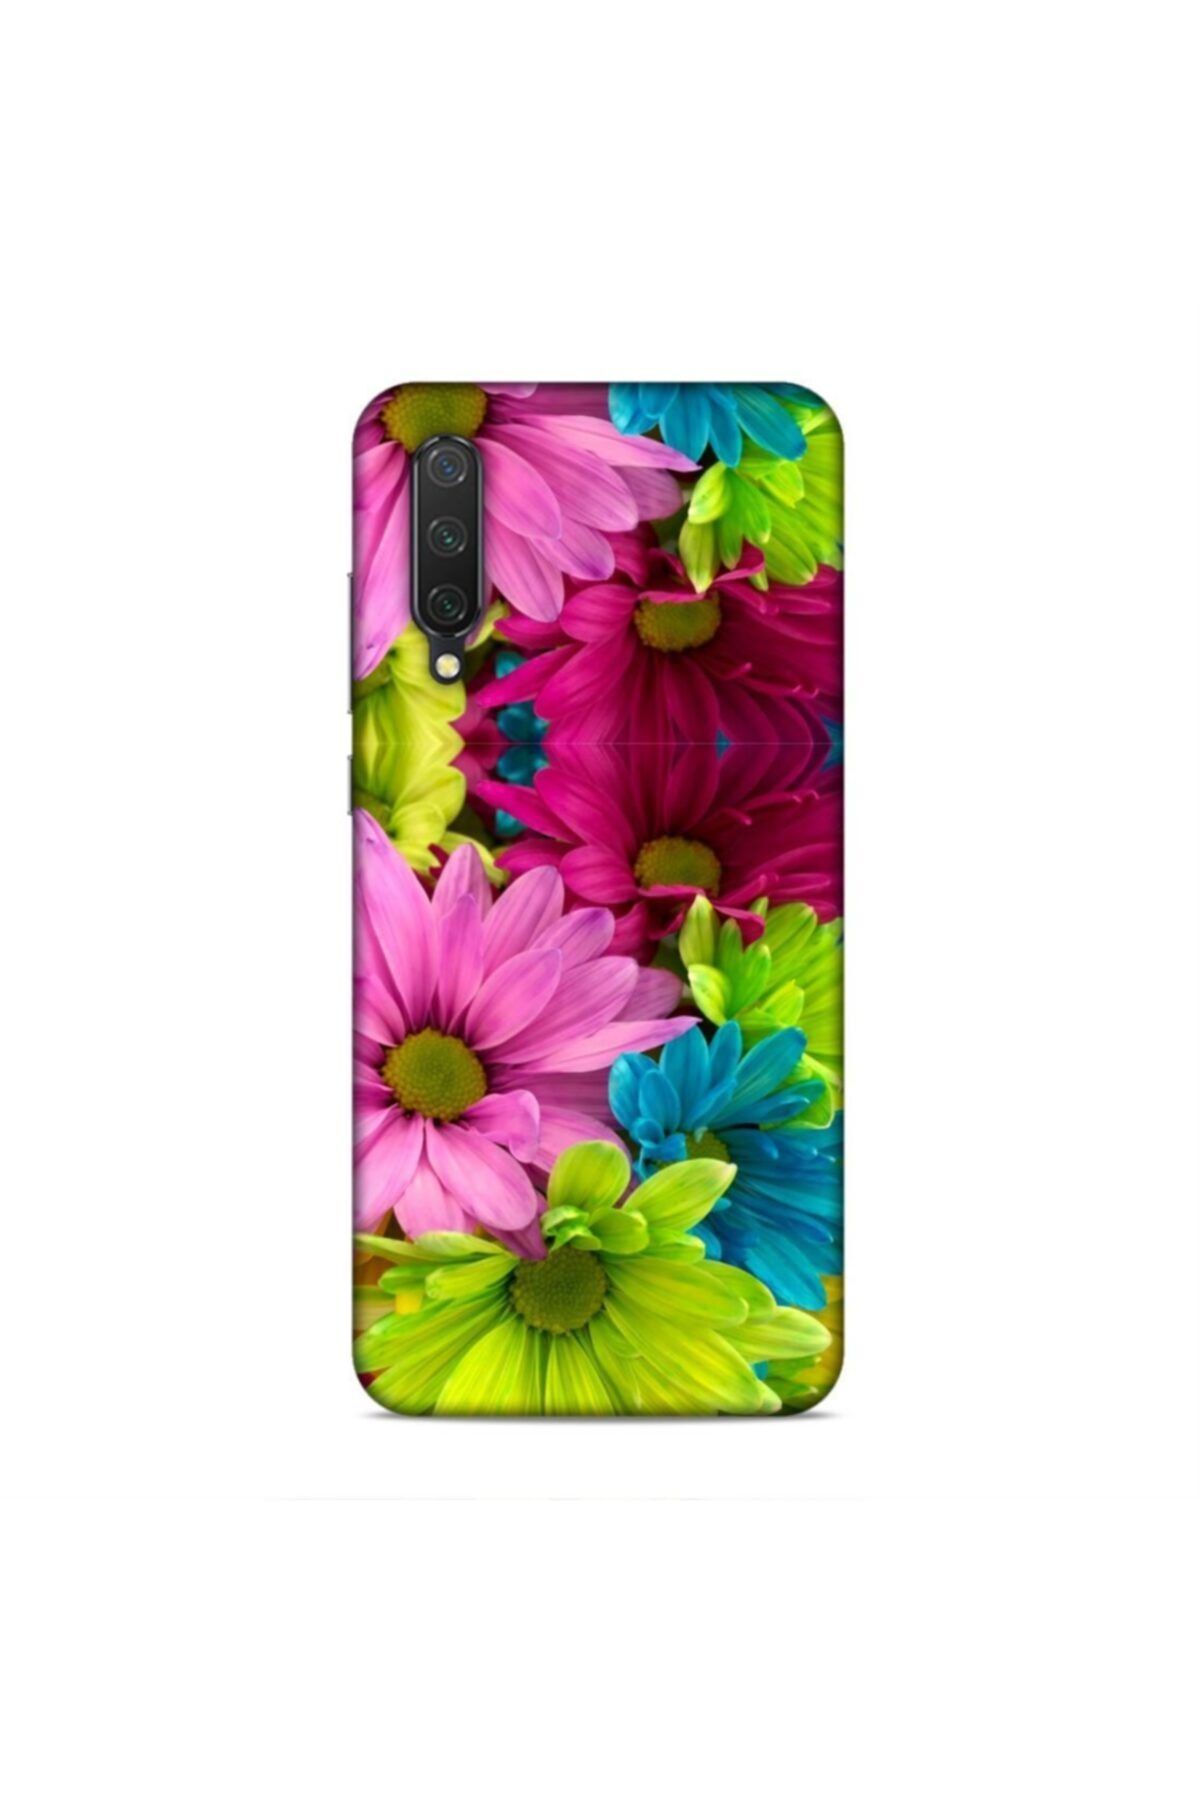 Pickcase Xiaomi Mi 9 Lite Kılıf Desenli Arka Kapak Renkli Çiçekler